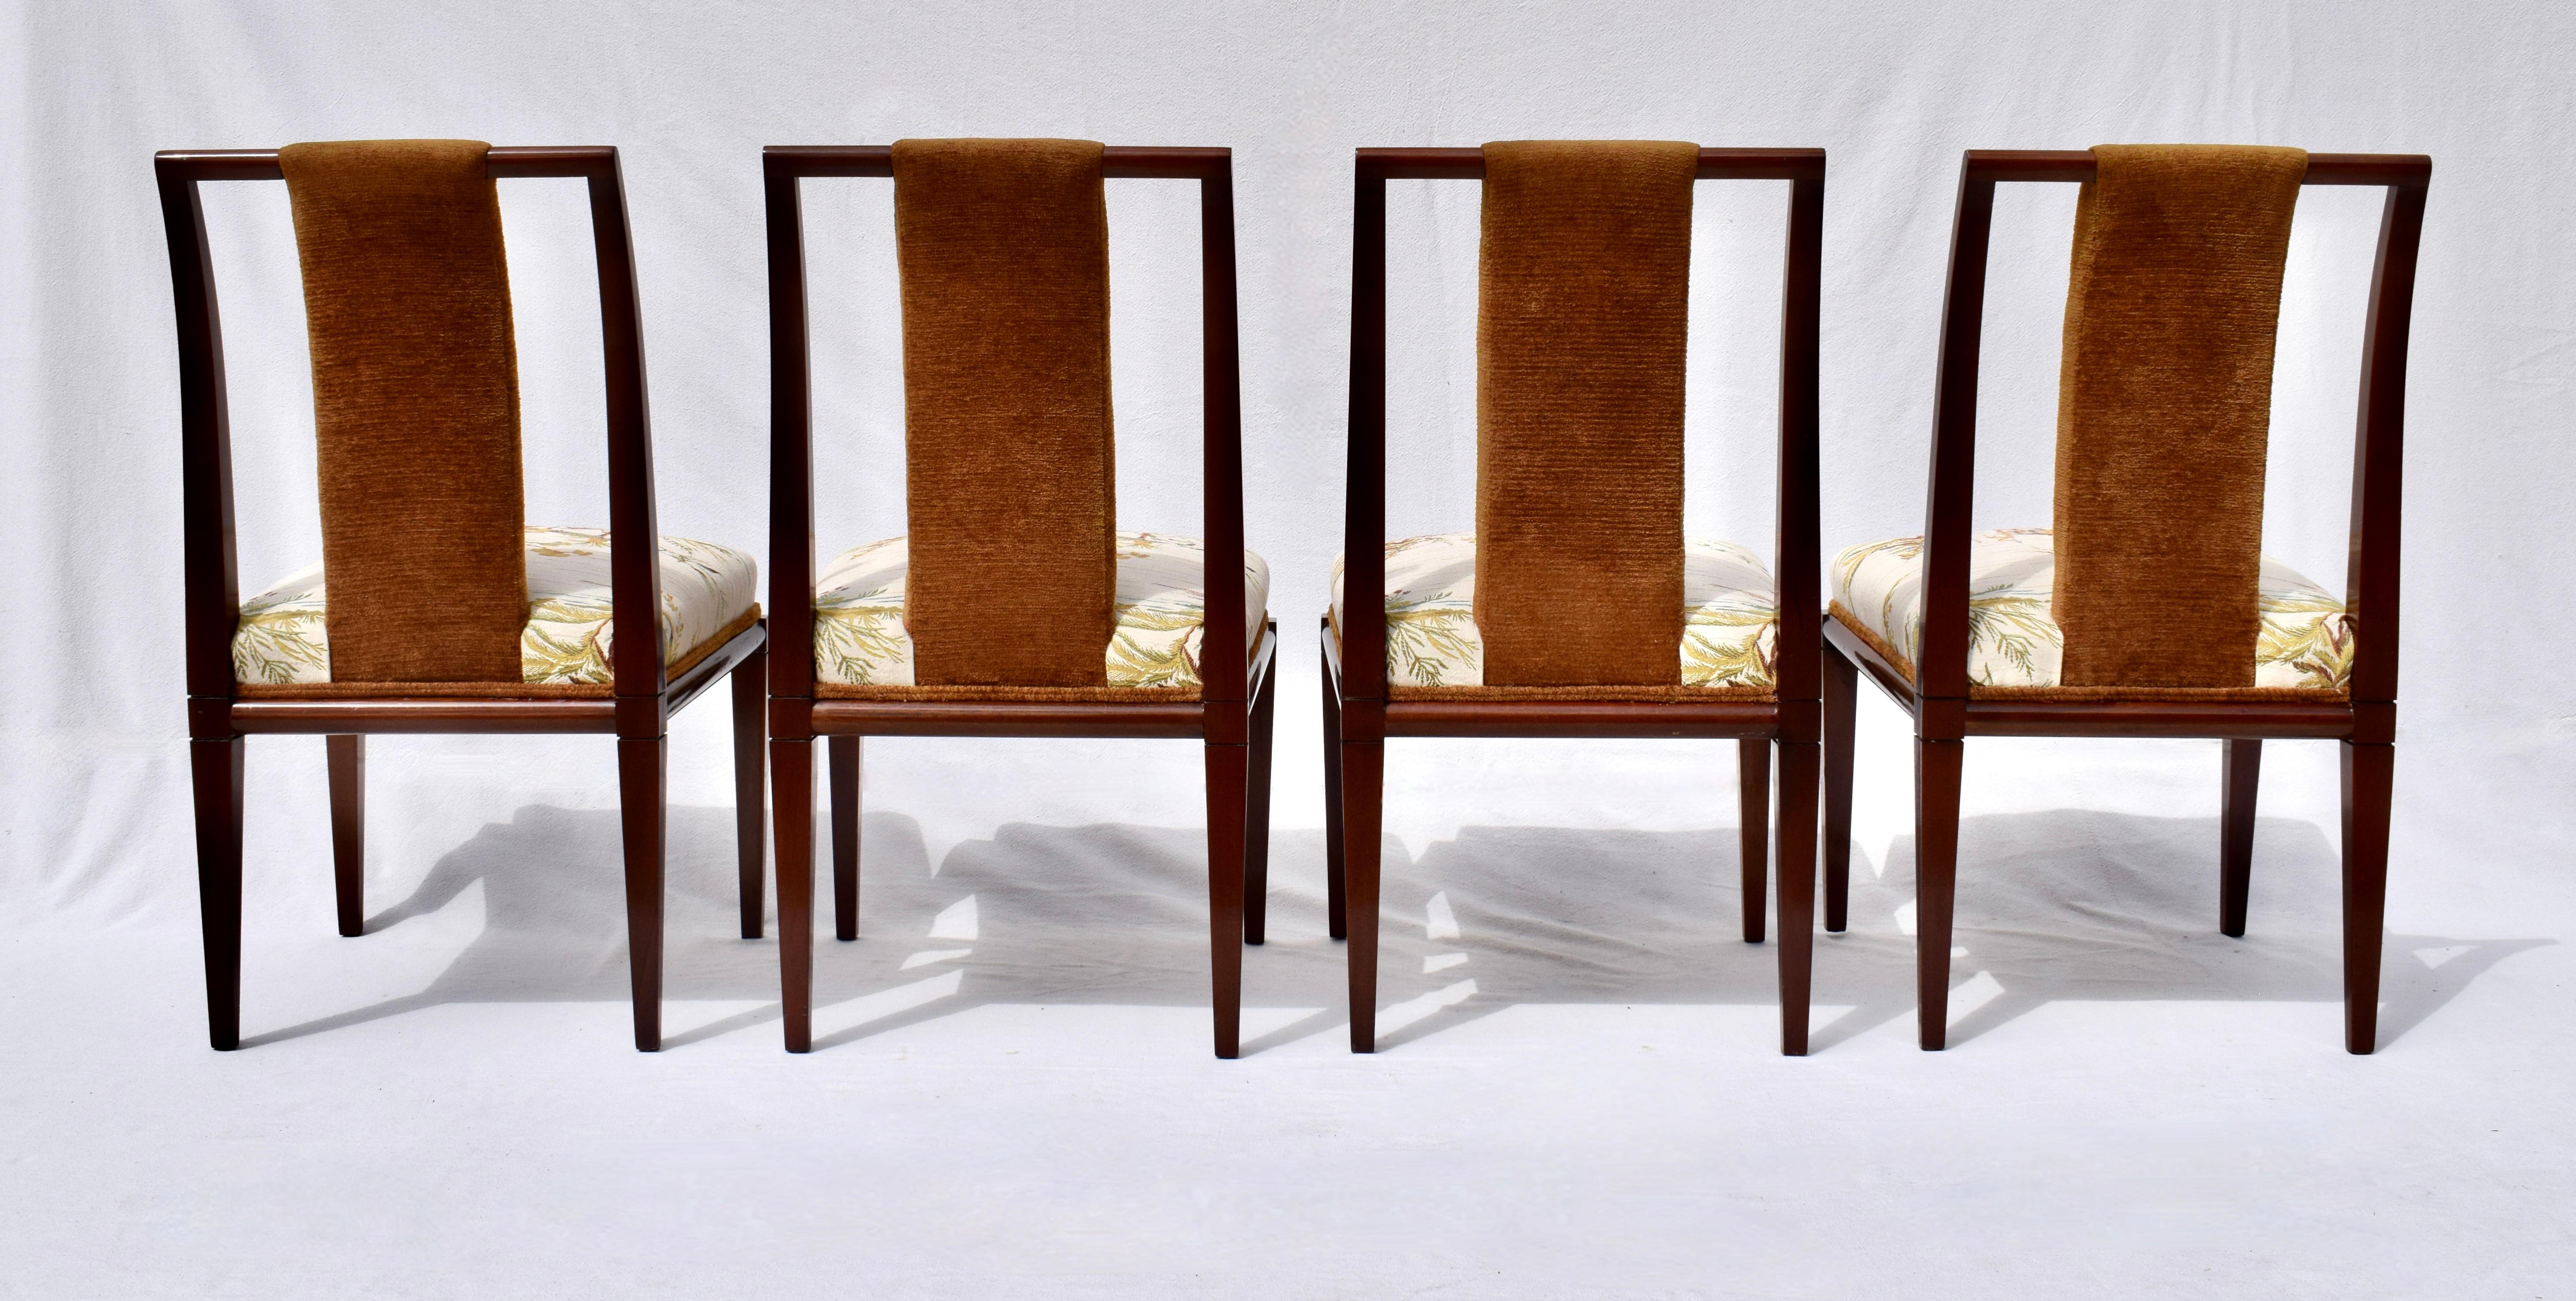 Tommi Parzinger Esszimmerstühle aus Brunschwig & Fils, 1950er Jahre (20. Jahrhundert) im Angebot